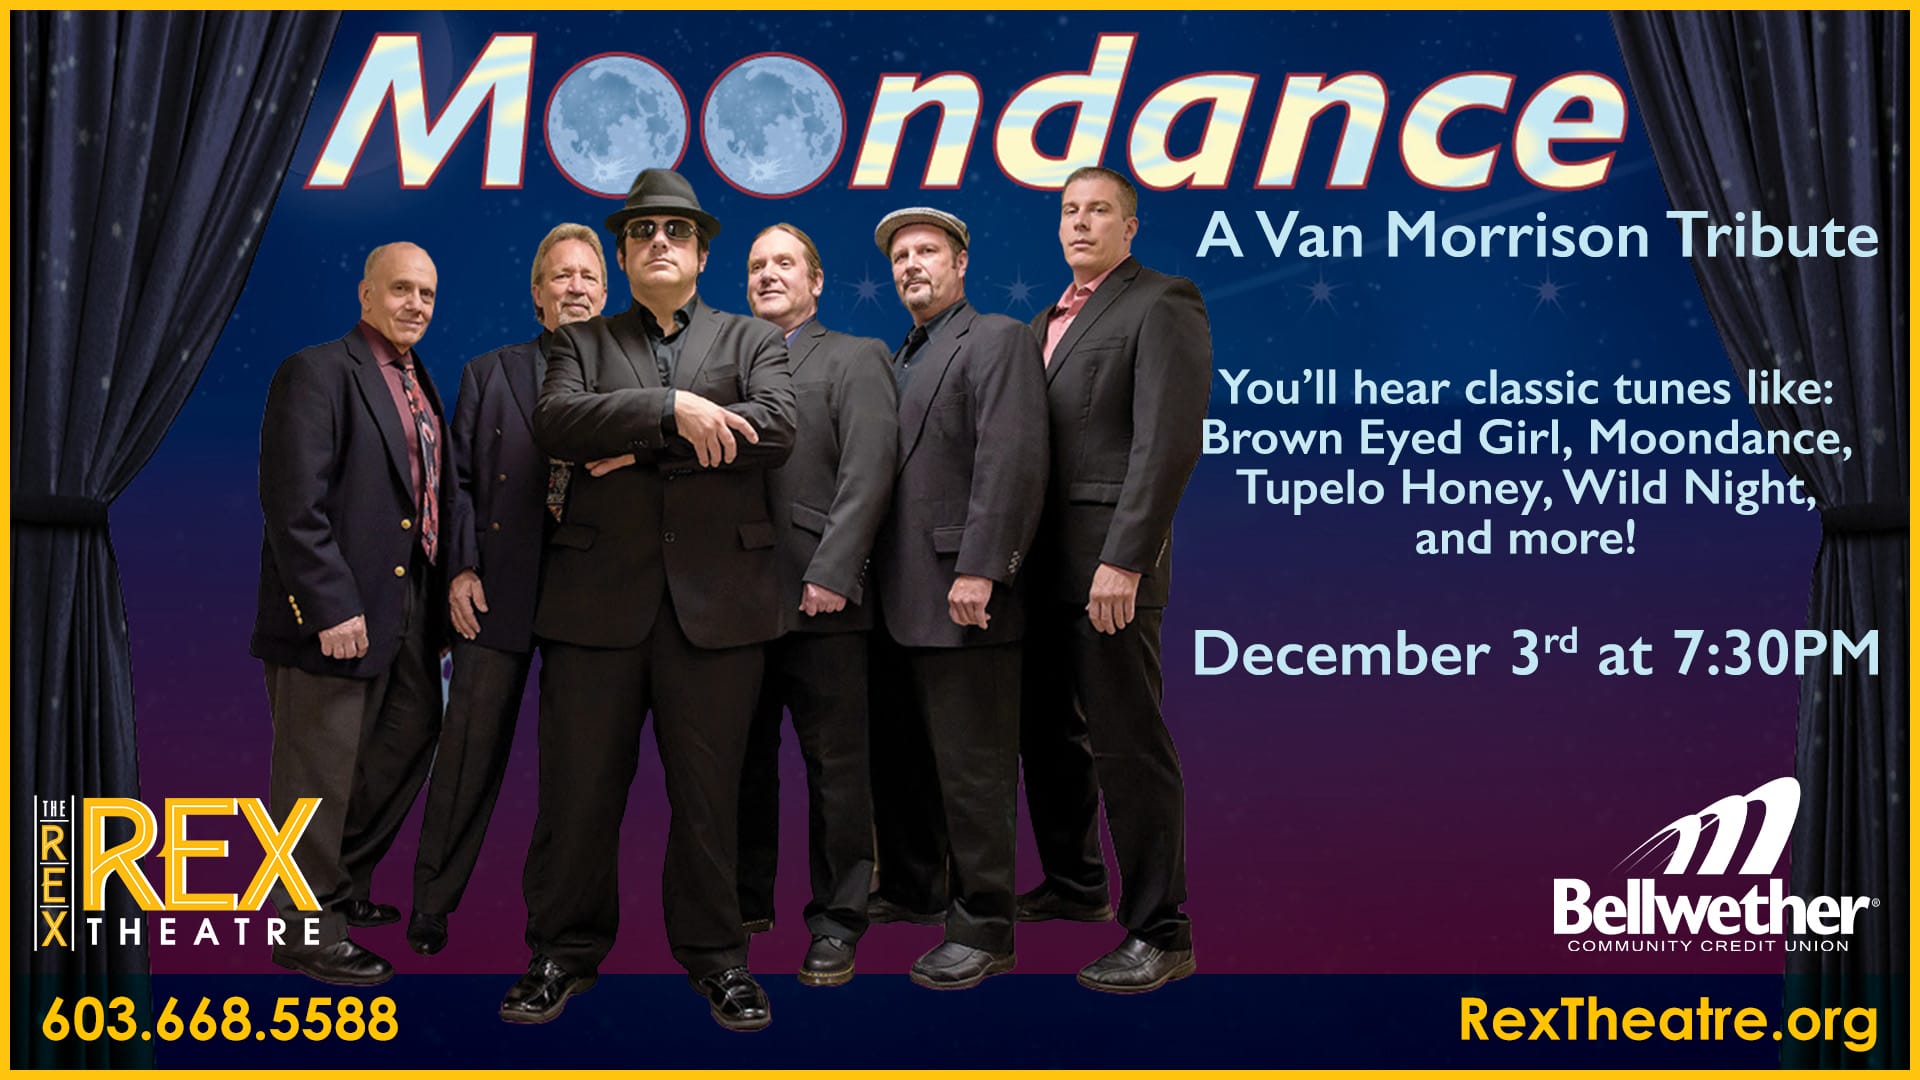 Moondance: Van Morrison - Hãy xem hình ảnh để tận hưởng âm nhạc huyền thoại của Van Morrison qua ca khúc Moondance, những giai điệu mang đến sự thư giãn và hạnh phúc.